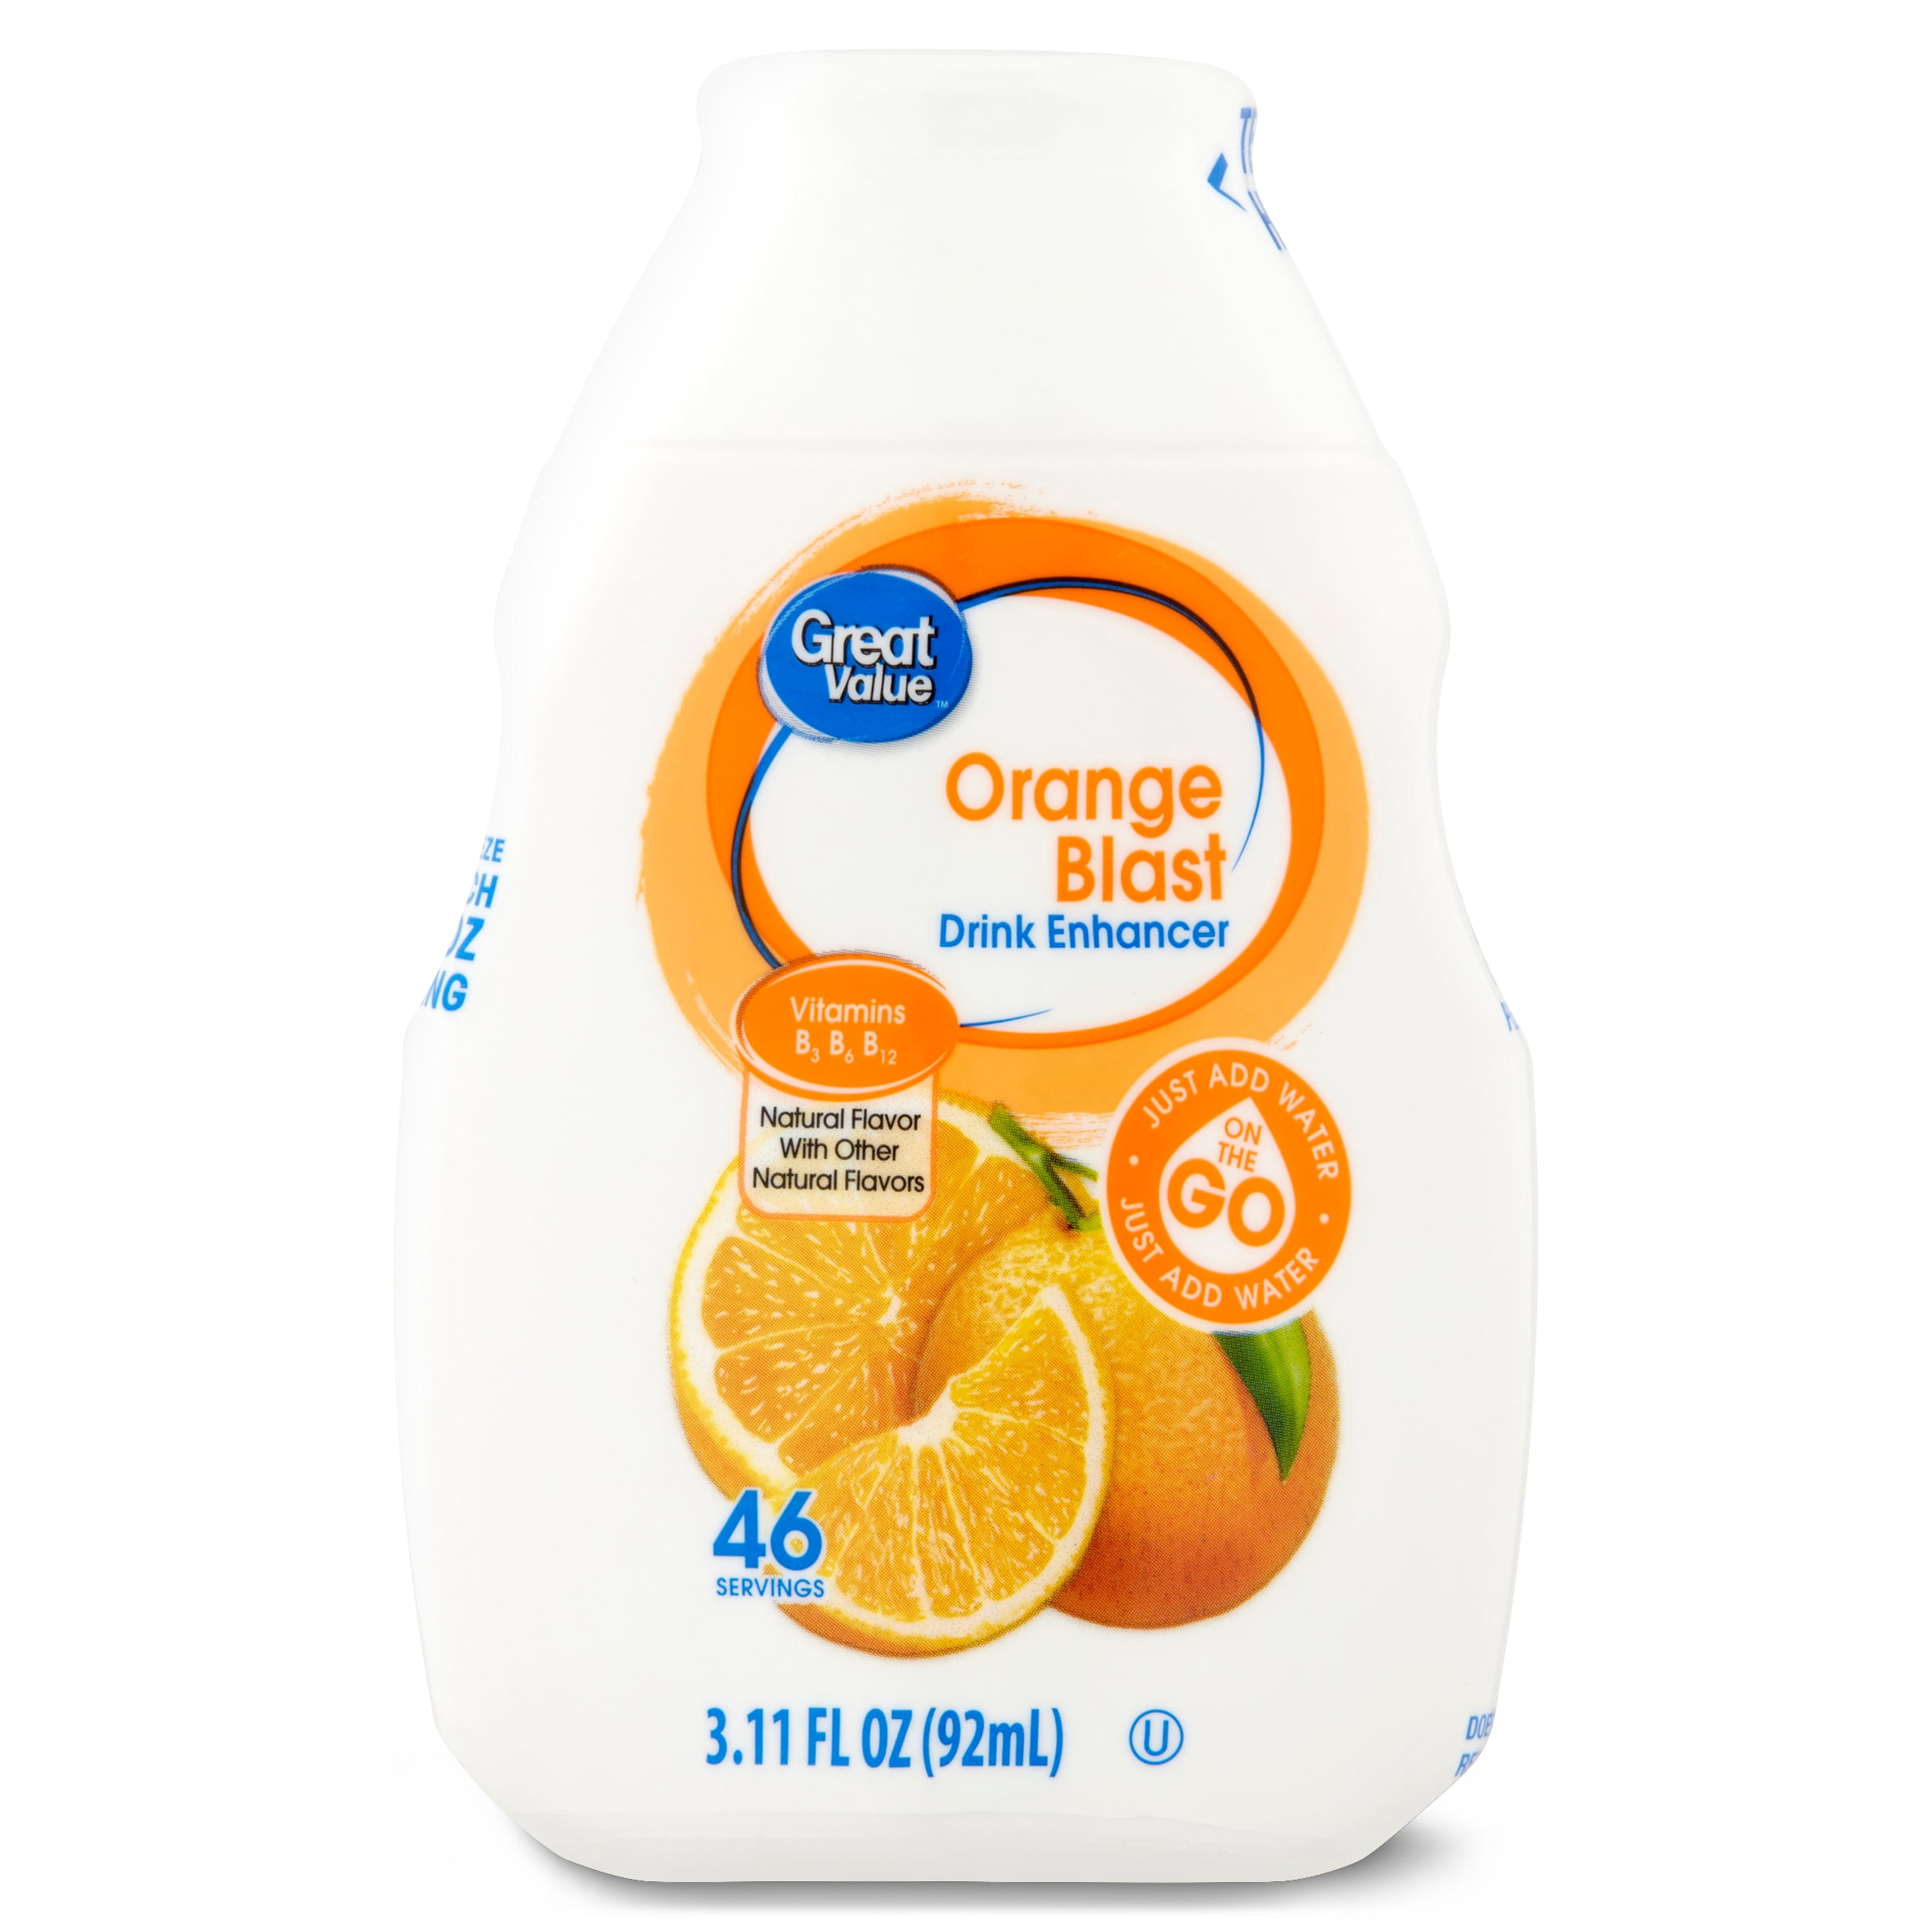 Great Value Orange Blast Drink Enhancer, 3.11 fl oz bottle